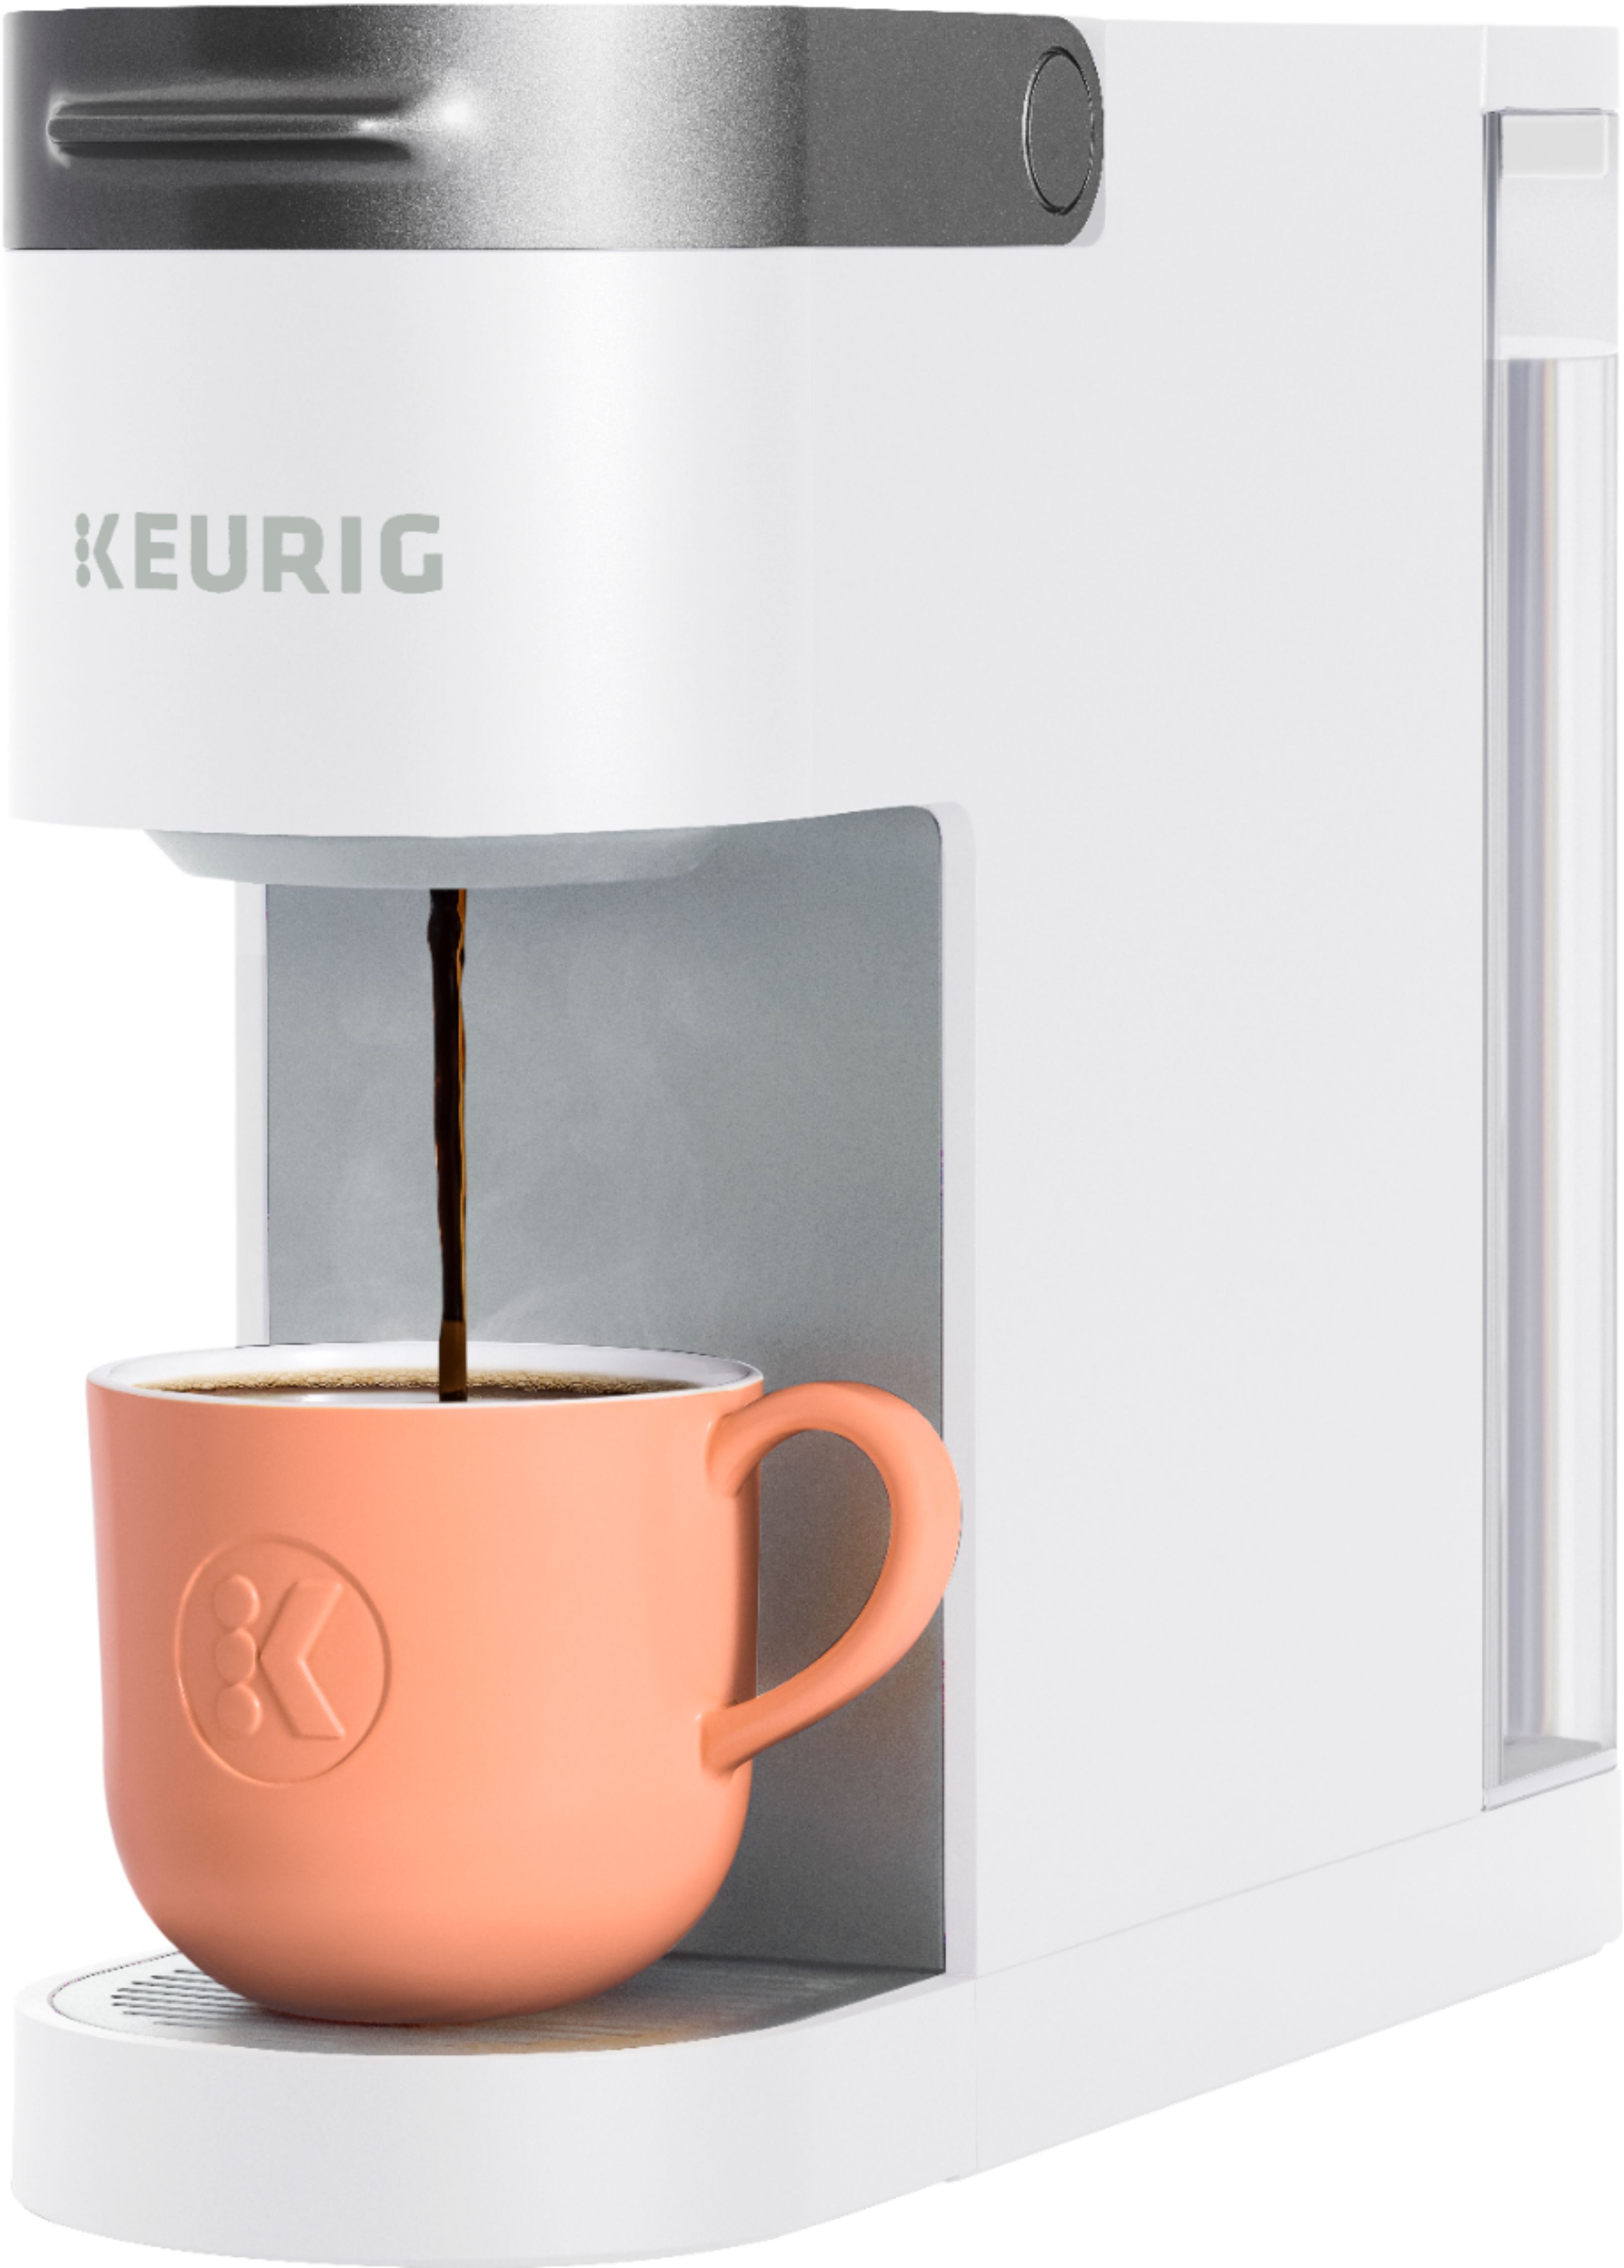 Keurig K-Slim Single-Serve K-Cup Pod Coffee Maker White 5000361881 - Best Buy | Best Buy U.S.